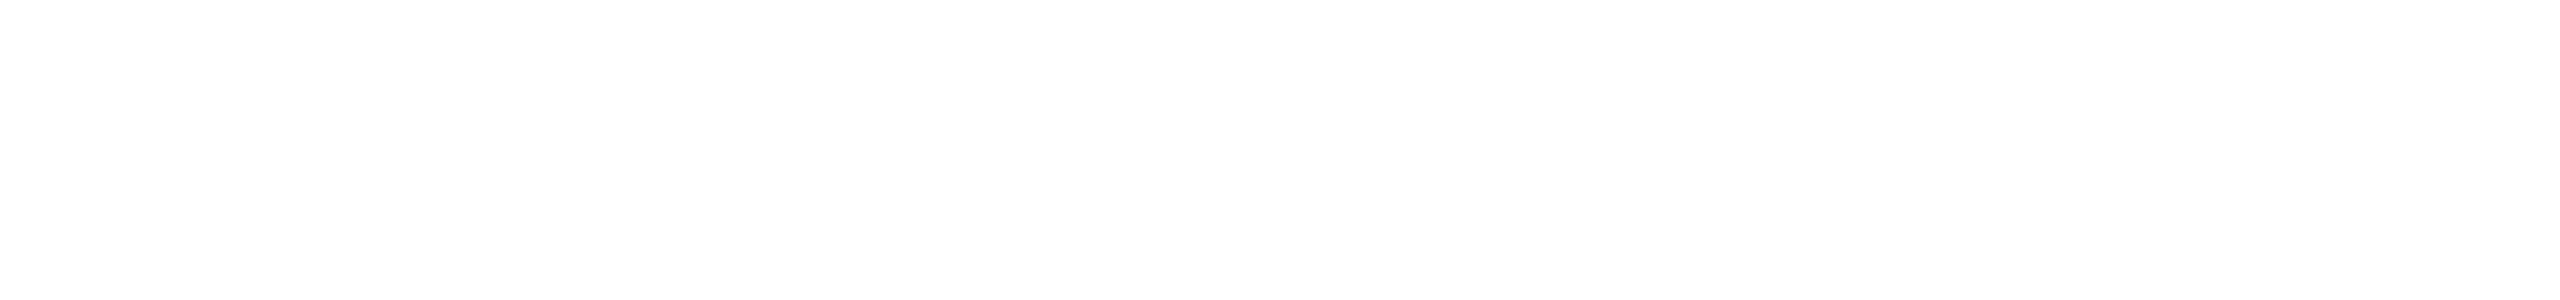 Porter-Cable_logo_White